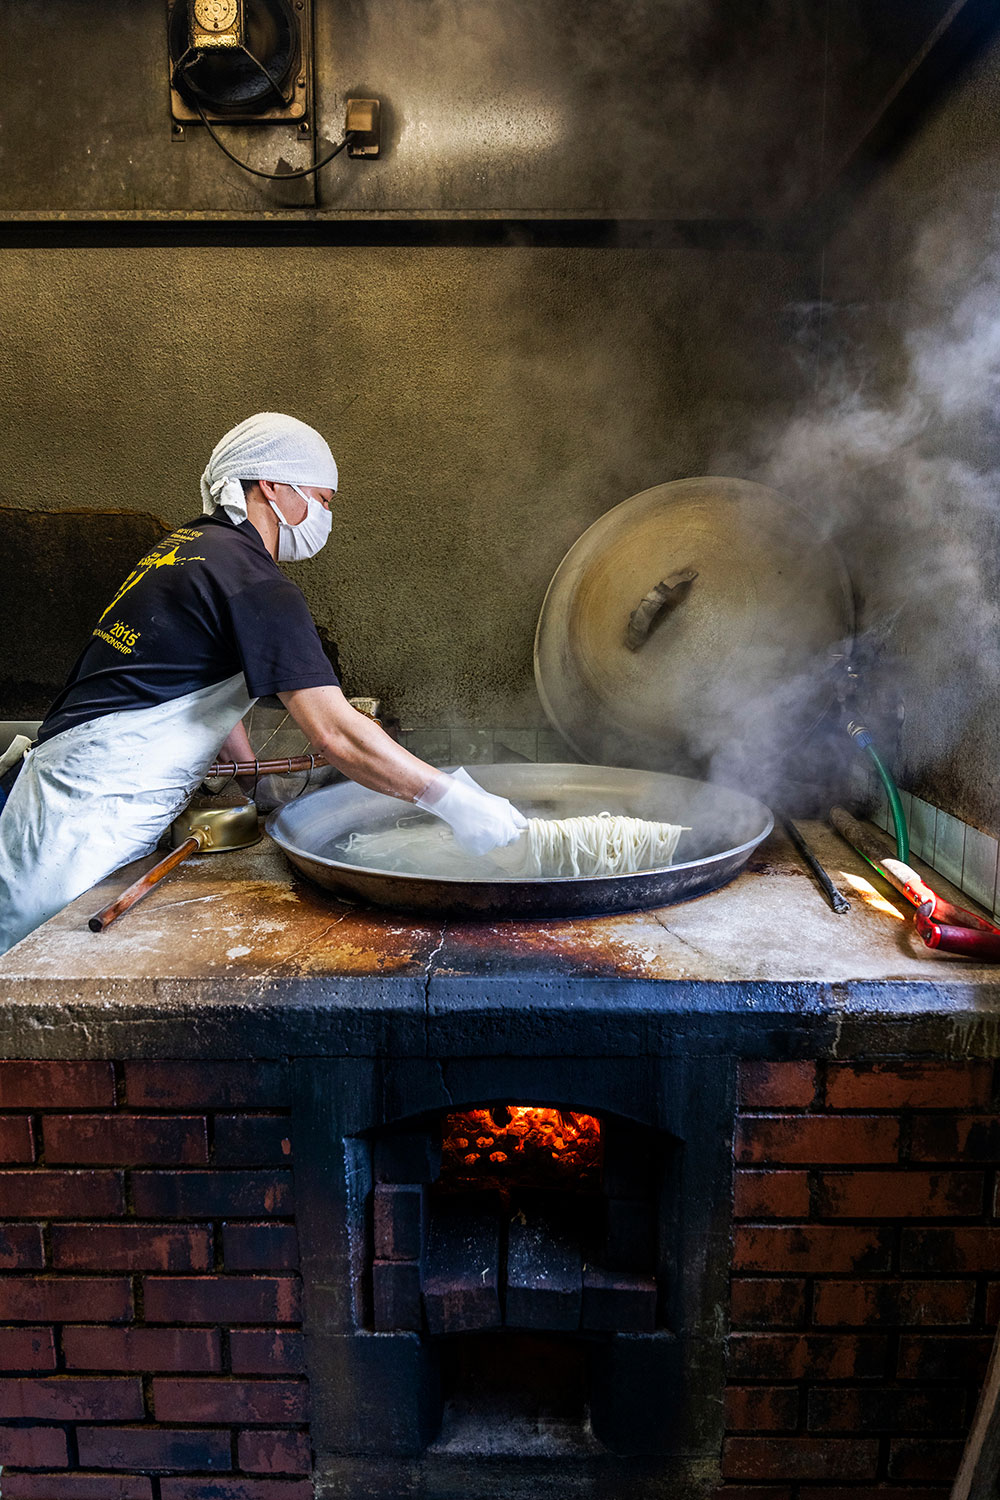 薪を燃やし大鍋で麵を茹でる。窯から出る煙が麵をスモークし、独特の風味が完成。